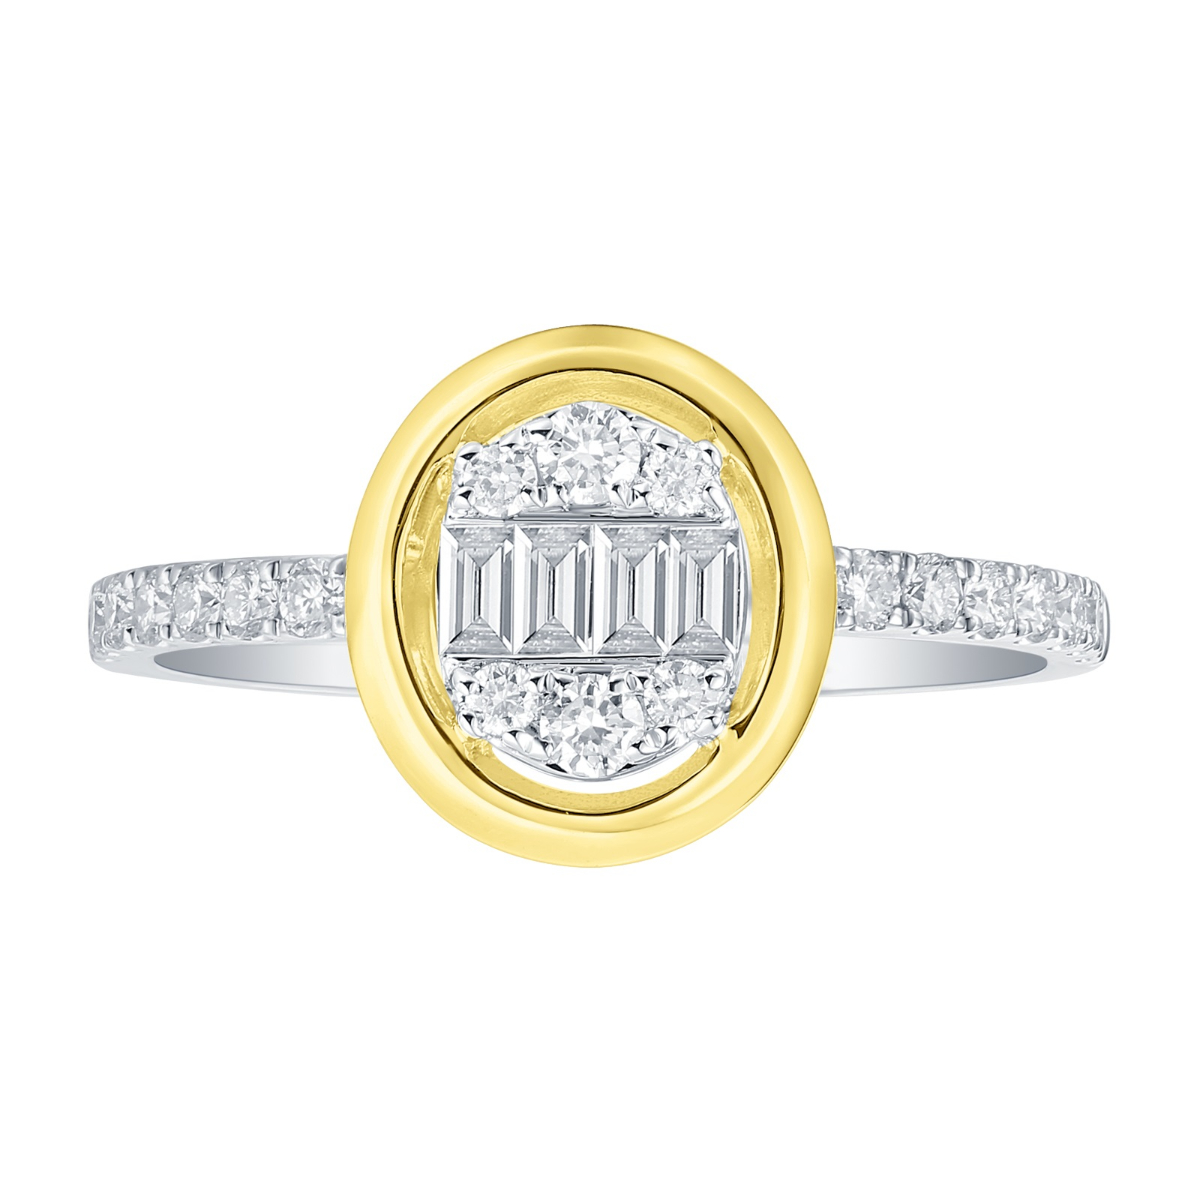 R36578WHT – 18K Yellow and White Gold  Diamond Ring, 0.45 TCW